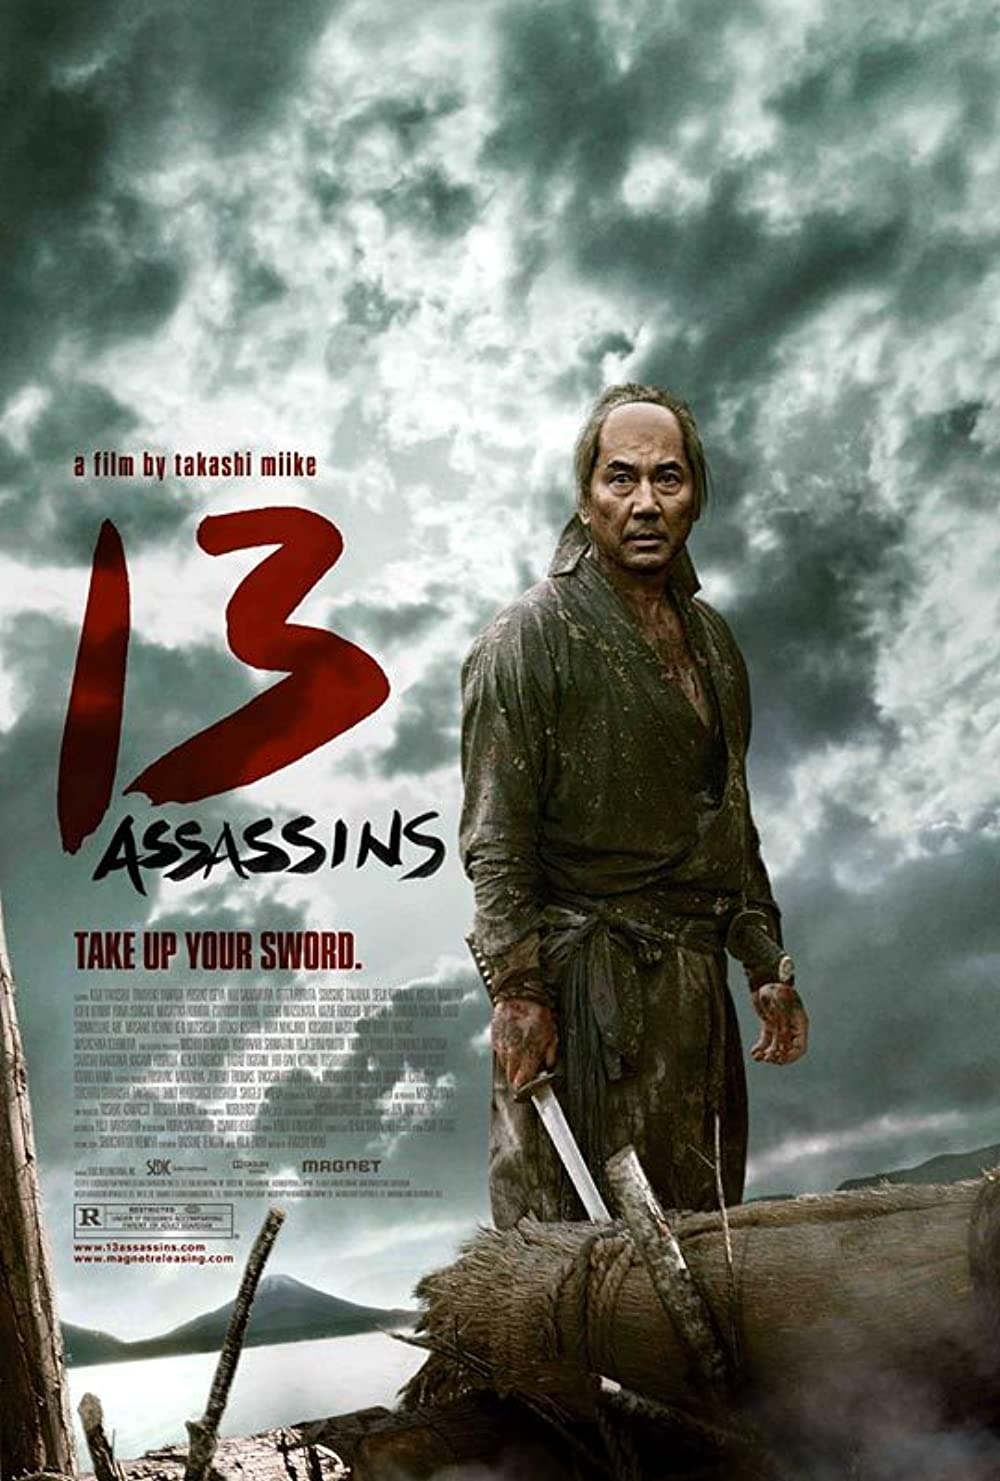 Phim hành vi võ thuật Nhật Bản: 13 mến khách hàng - 13 Assassins (2010)